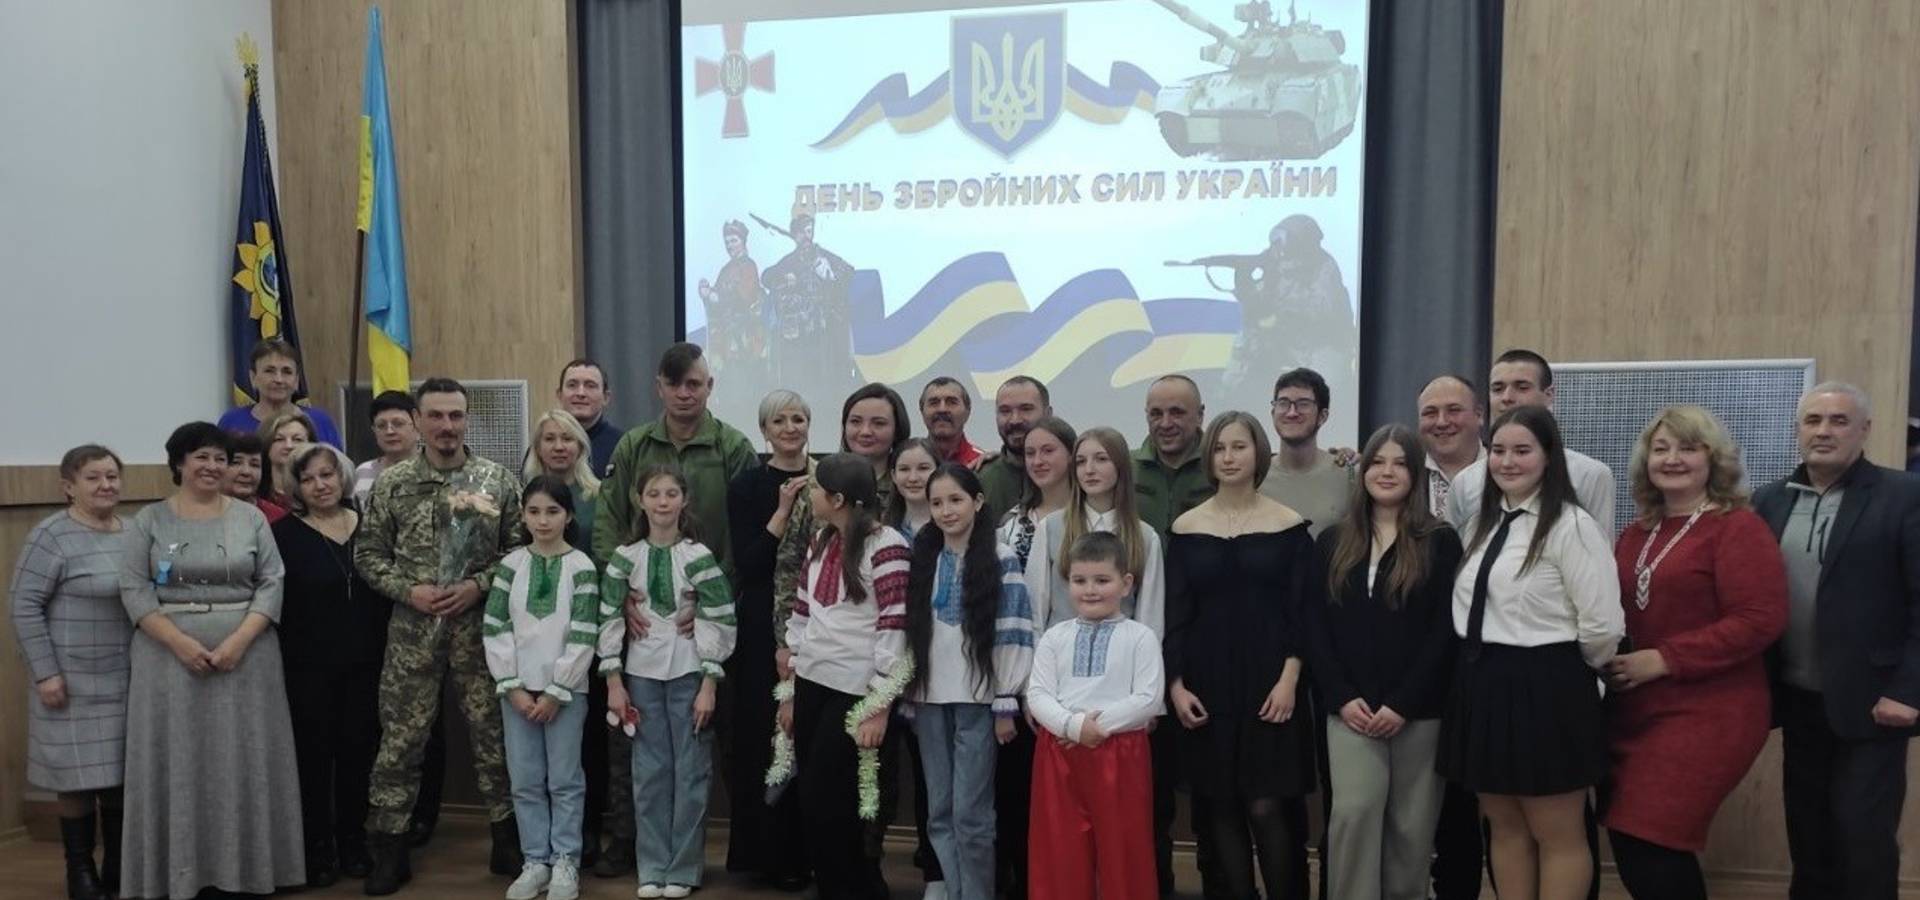 У другу школу в Хмільнику  завітав Святий Миколай, разом з учнями та вчителями він вшанував українських воїнів